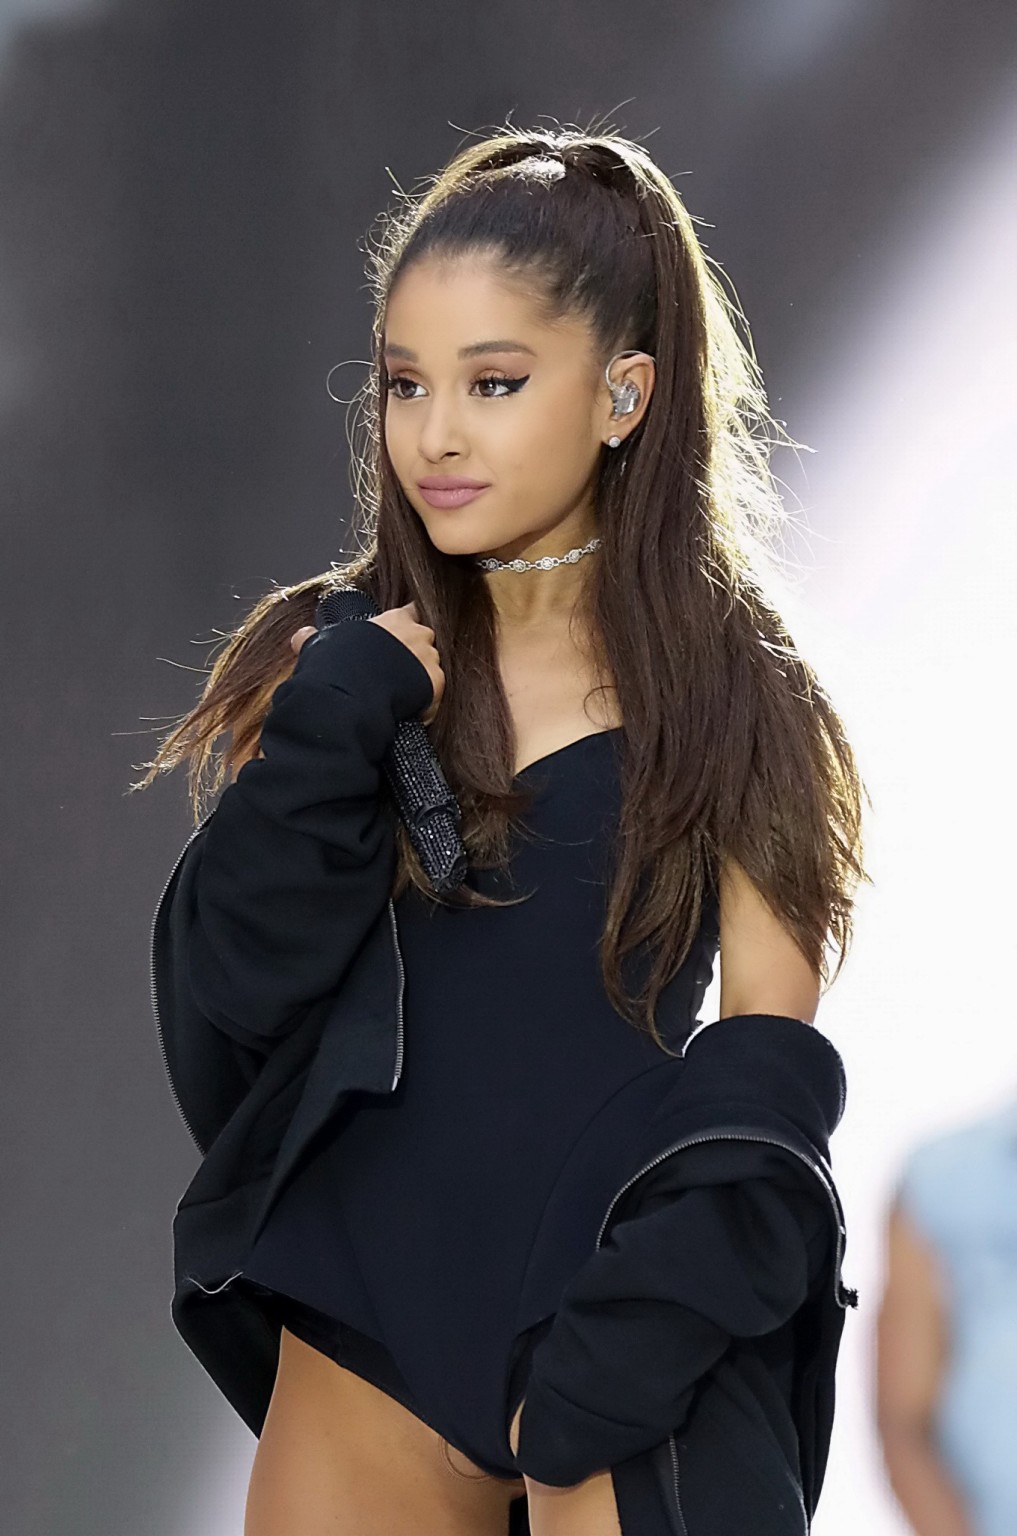 Ariana grande muestra su coño afeitado en un diminuto traje negro mientras actúa
 #75161899